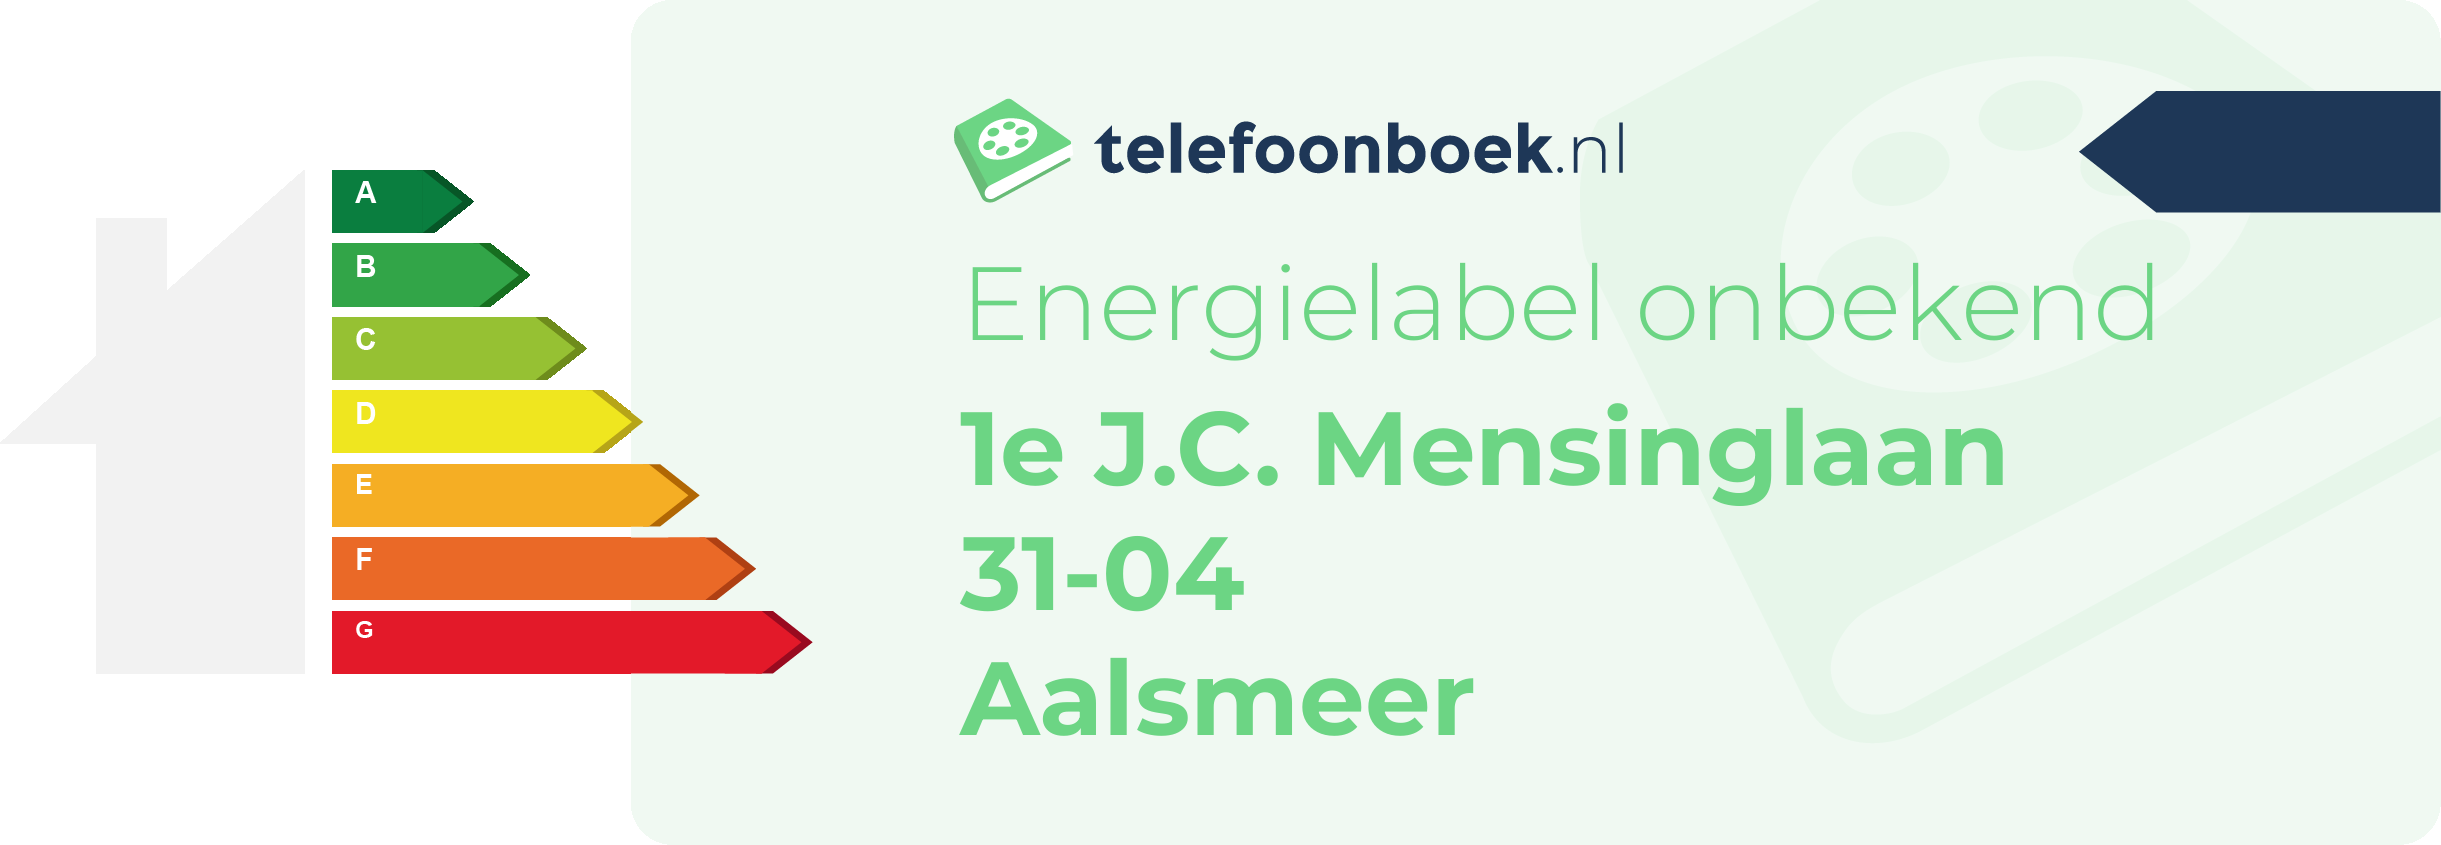 Energielabel 1e J.C. Mensinglaan 31-04 Aalsmeer